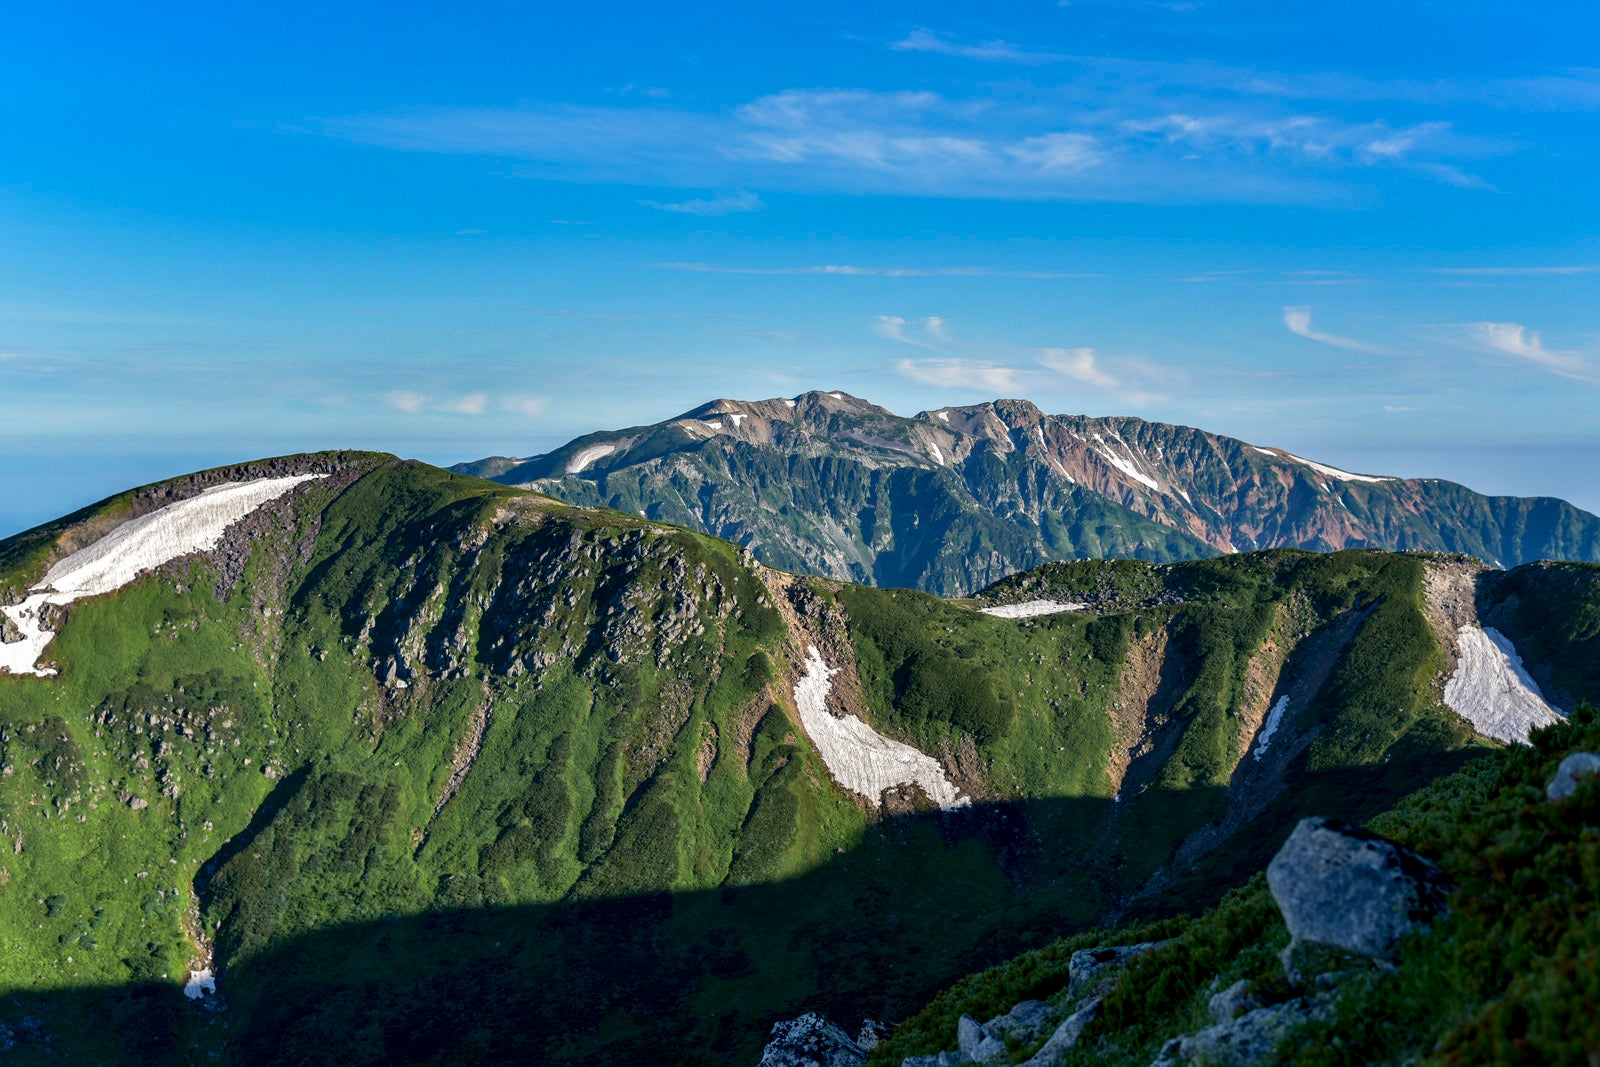 「鷲羽岳中腹から見る百名山薬師岳方面の景色」の写真